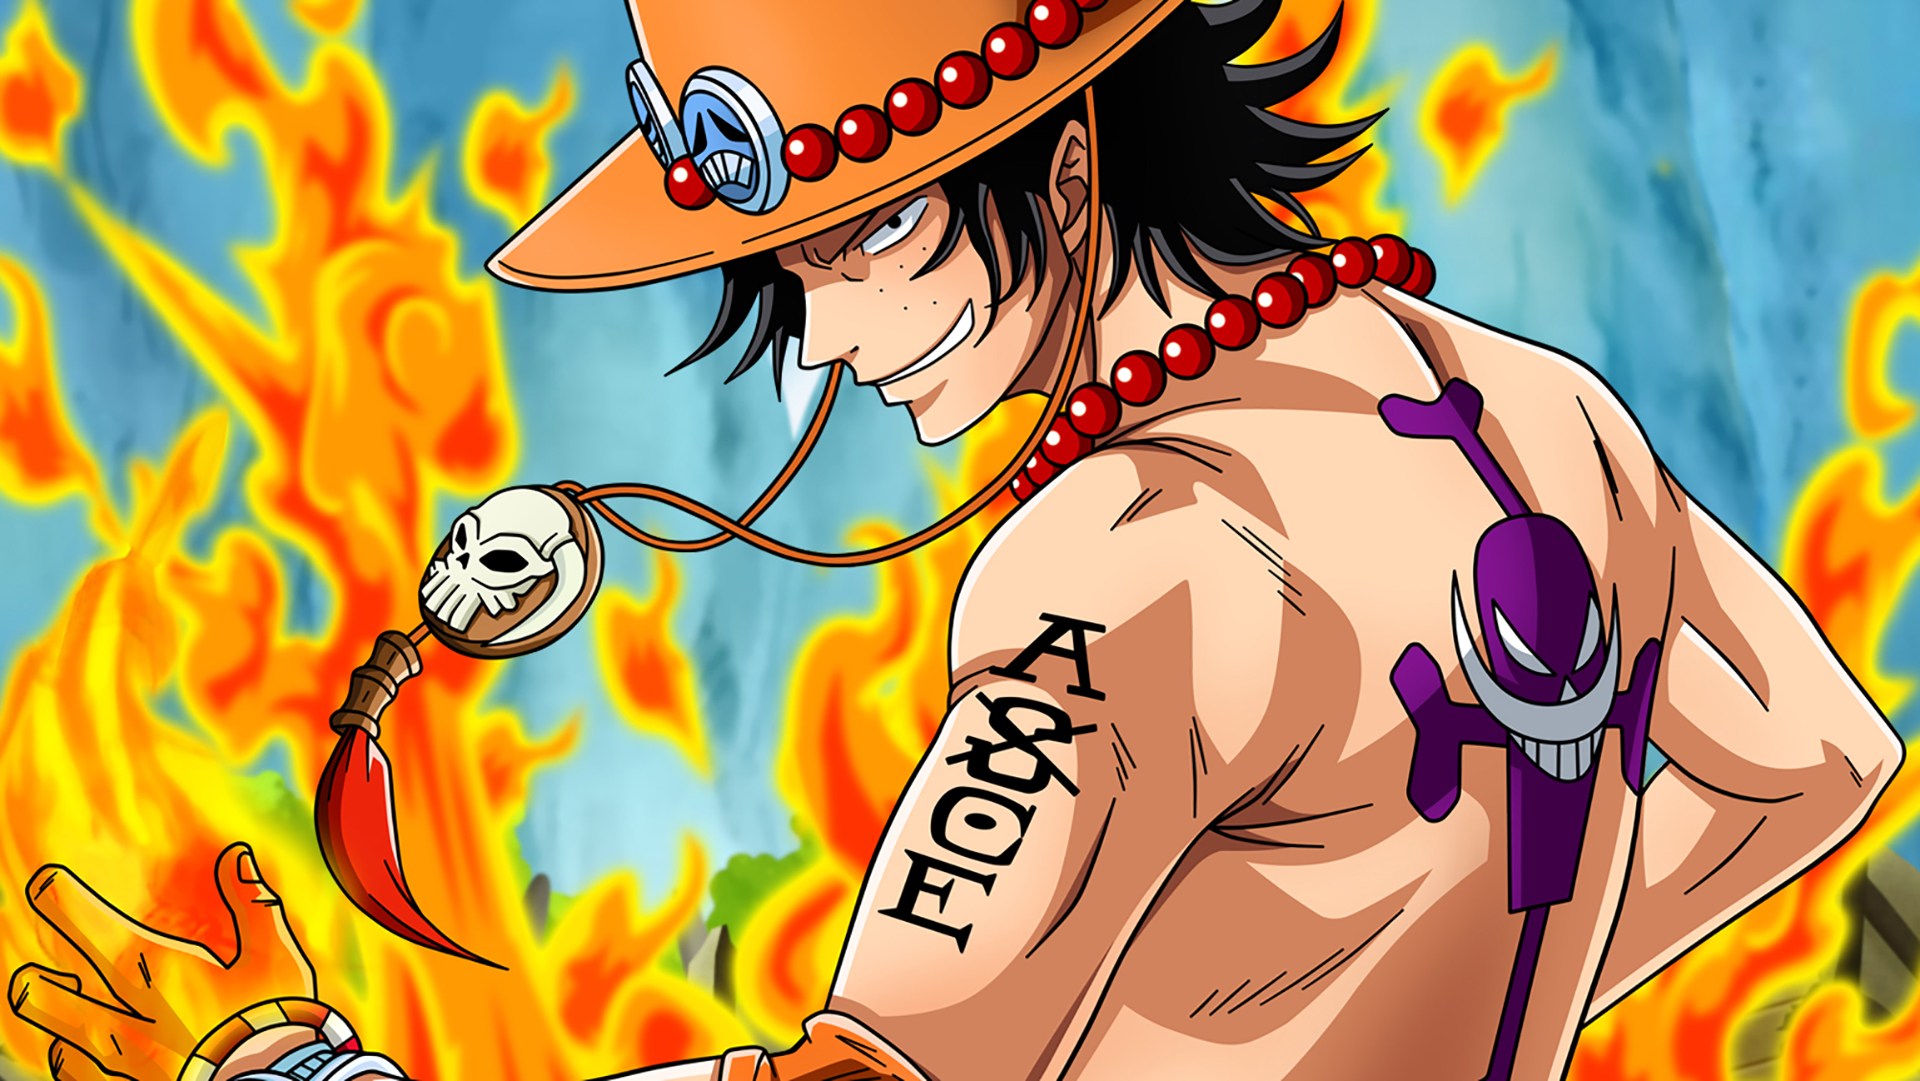 Trái Ác Quỷ - One Piece: Hãy đón xem bức hình liên quan đến Trái Ác Quỷ trong bộ truyện nổi tiếng One Piece. Với những trận chiến quyết liệt giữa các nhân vật chính và kẻ thù, bộ truyện này sẽ không làm bạn thất vọng.